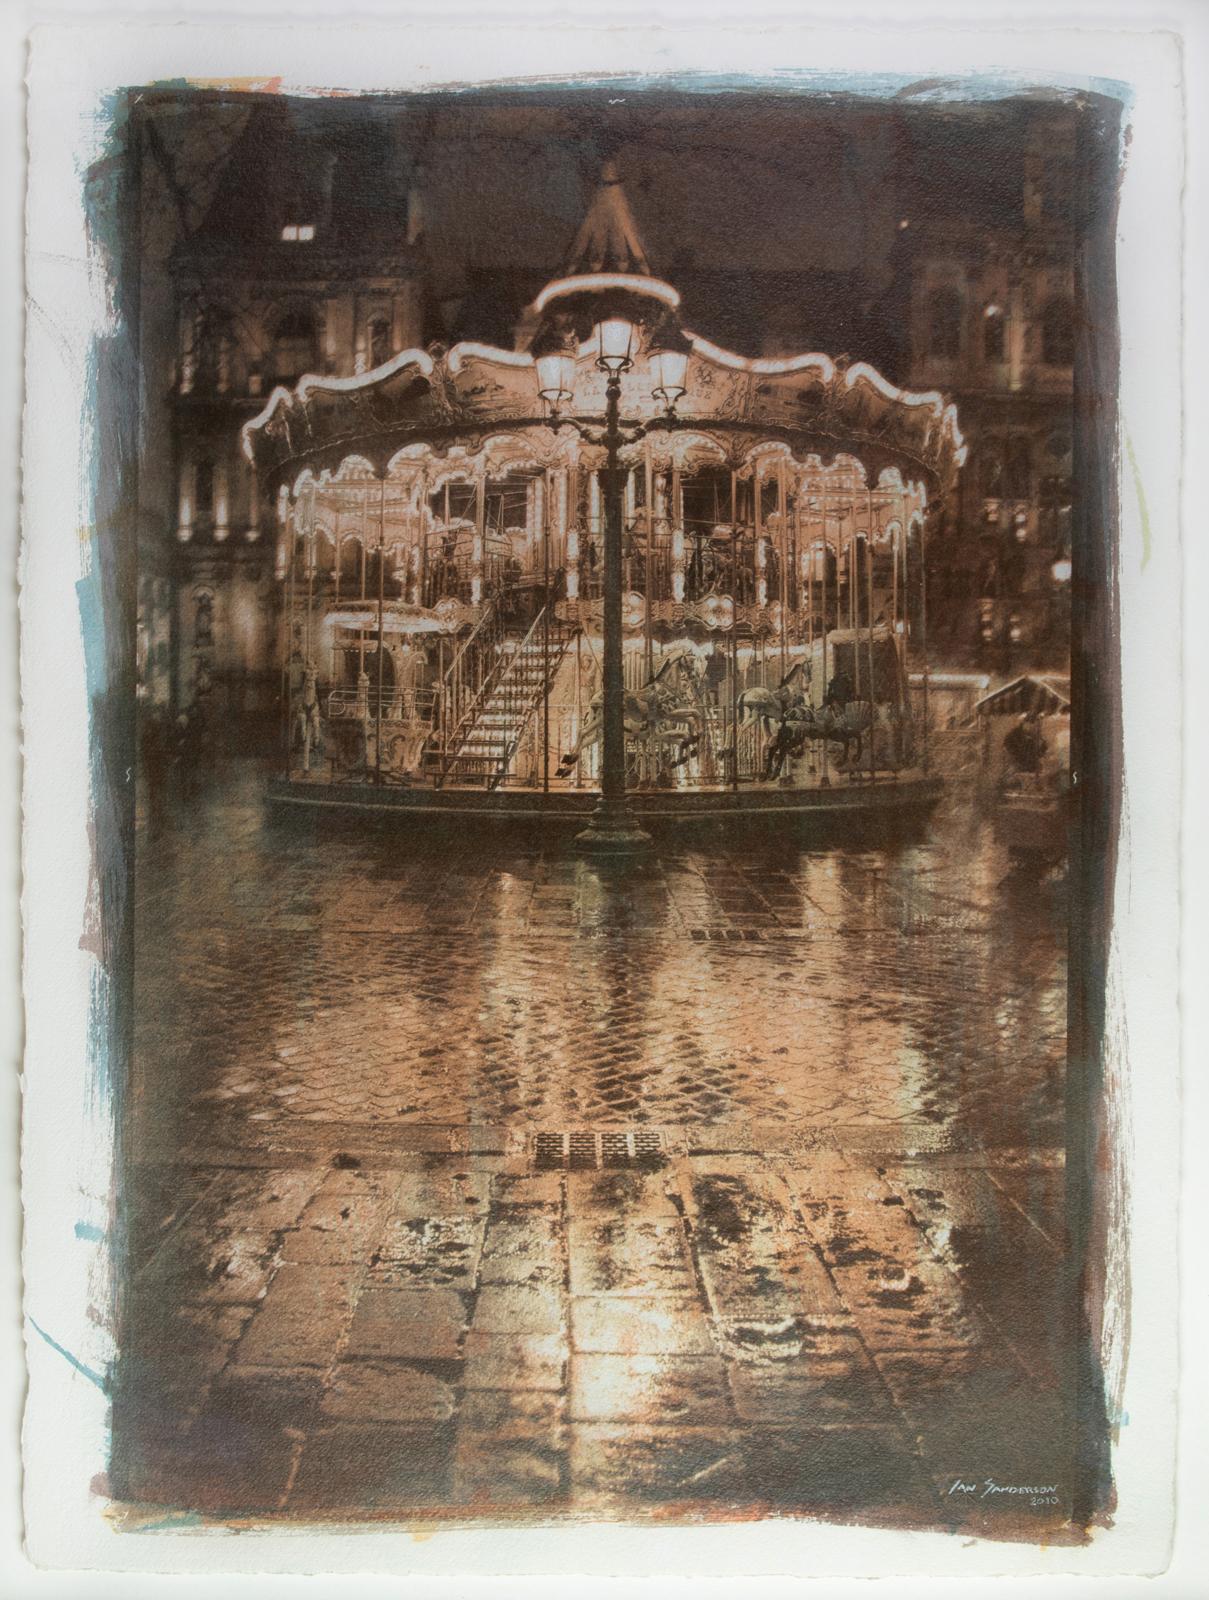 Ian Sanderson Color Photograph – Carrousel- Unique Gum Bichromate print (sensitised watercolour), Oversized photo